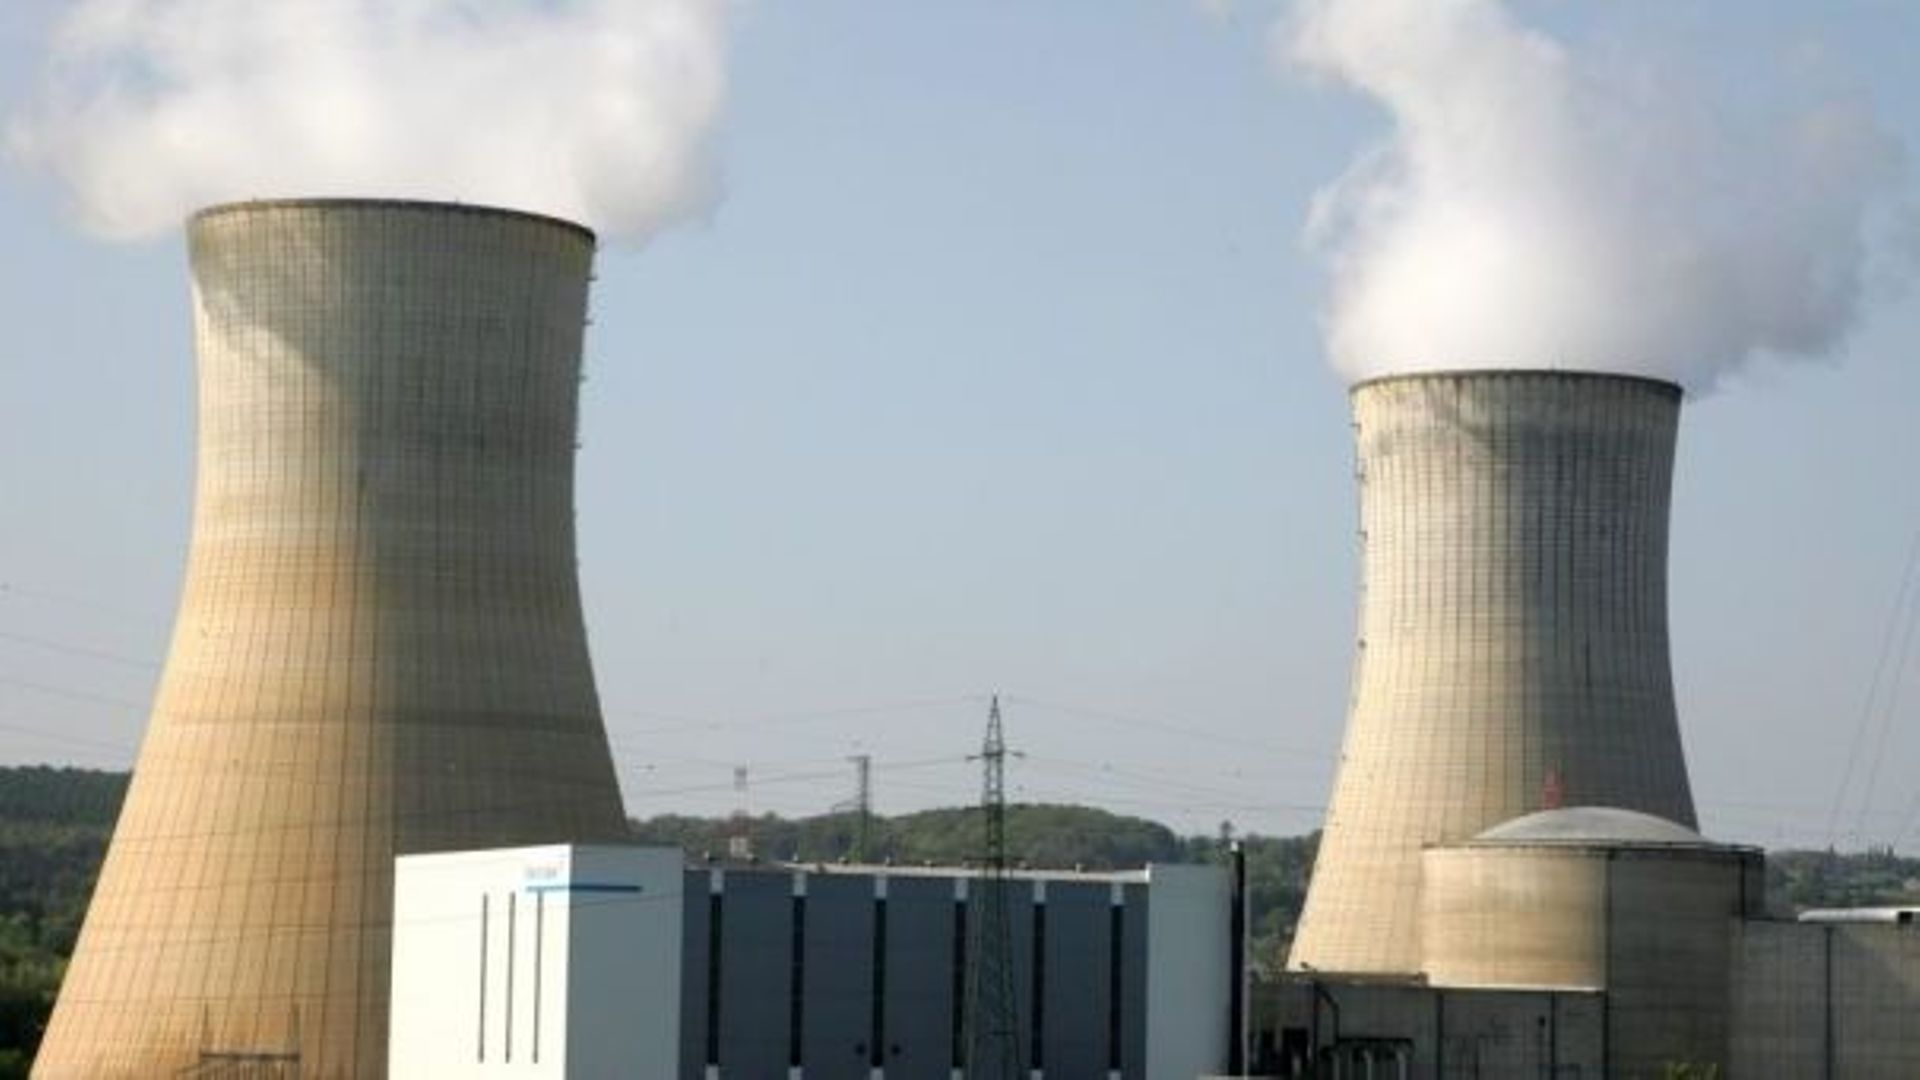 Arrêt de travail à la centrale nucléaire de Tihange